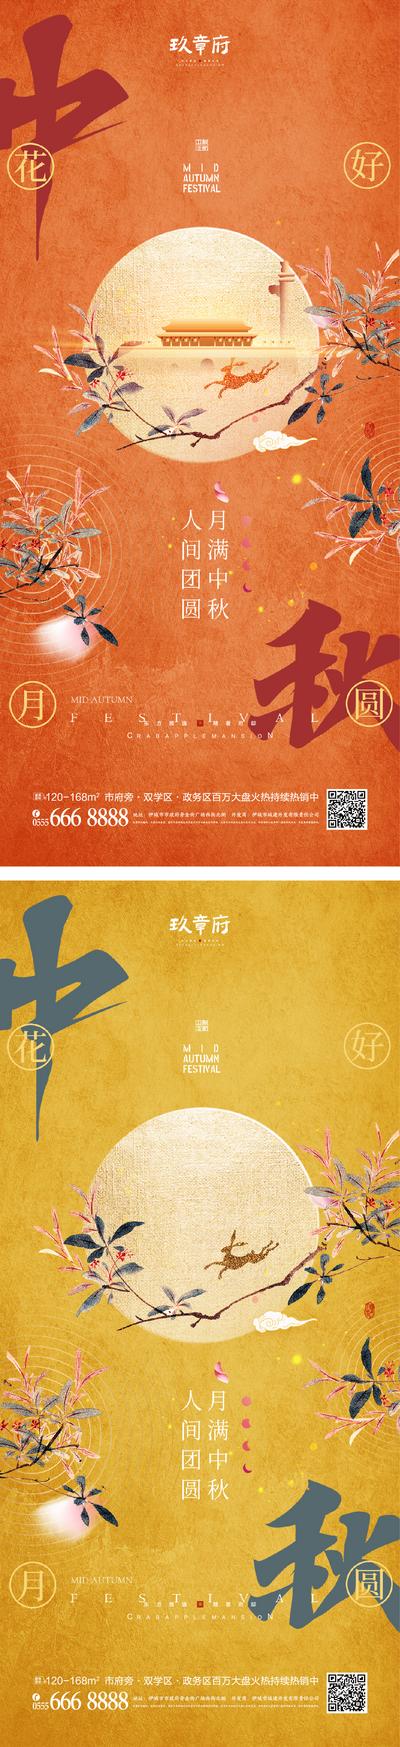 【南门网】海报 地产 中国传统节日 中秋节 国潮 月亮 兔子 剪影 树枝